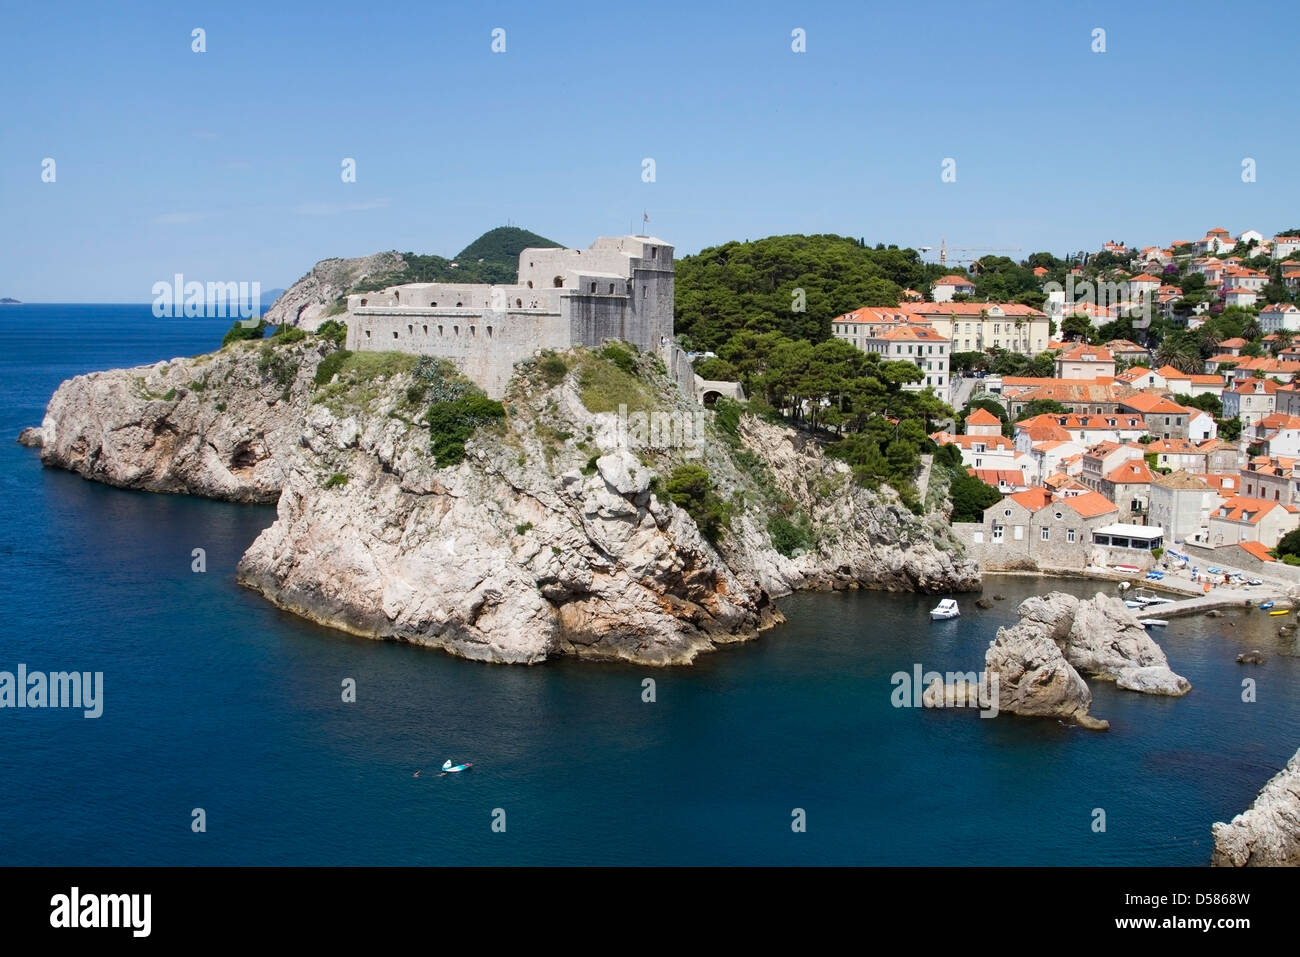 Forteresse du Saint-Laurent près de la vieille ville de Dubrovnik, Croatie Banque D'Images